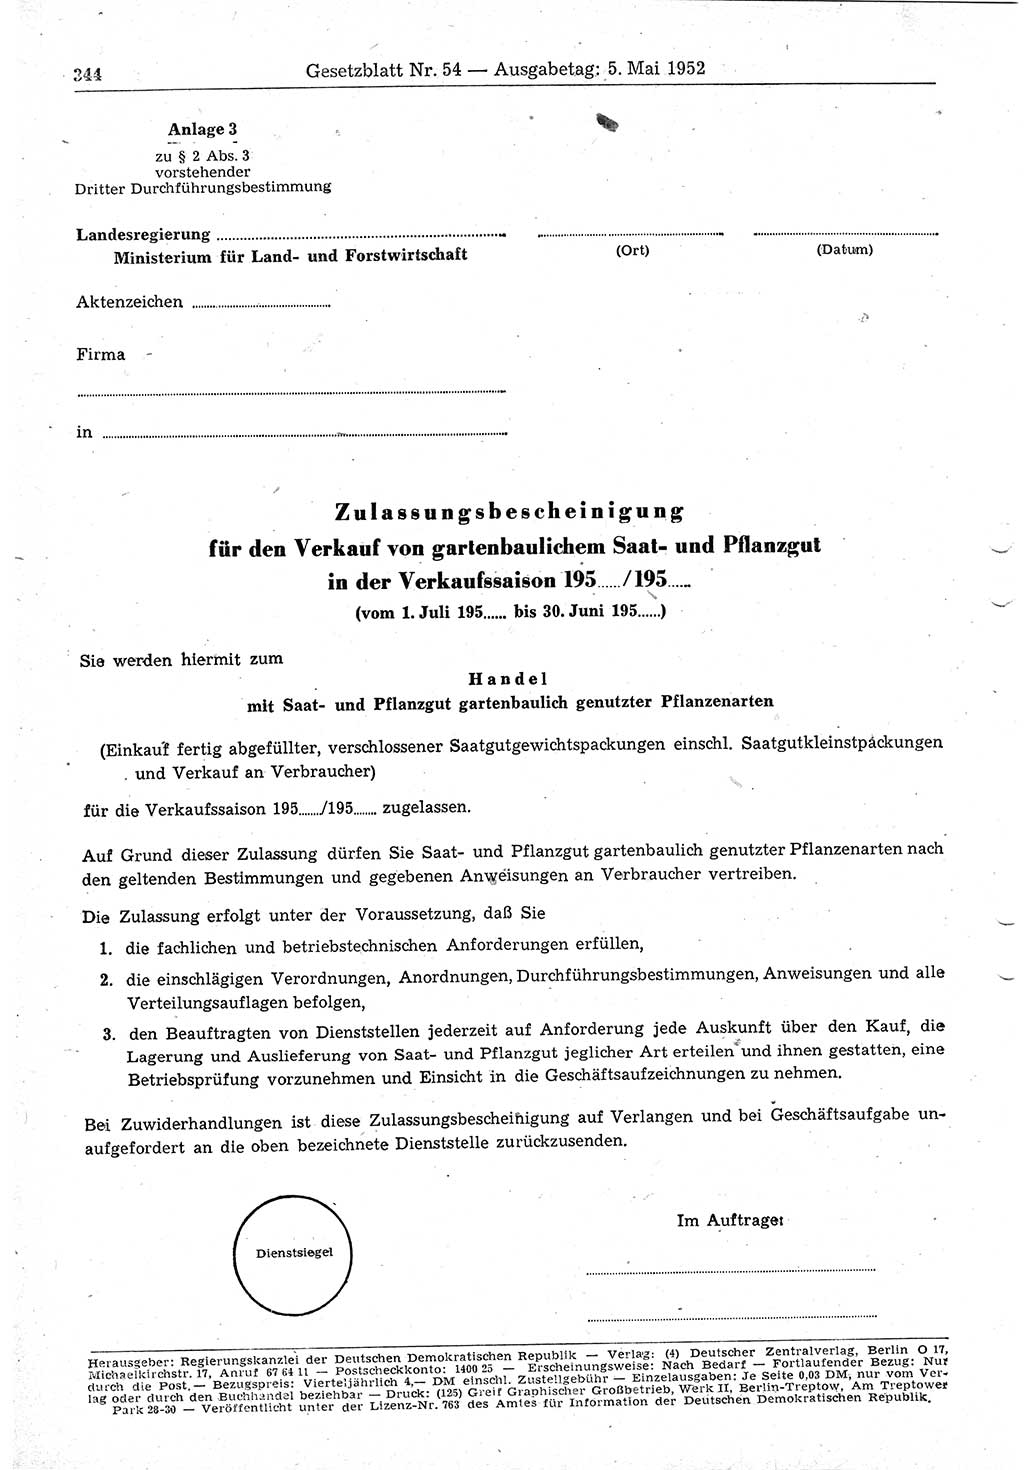 Gesetzblatt (GBl.) der Deutschen Demokratischen Republik (DDR) 1952, Seite 344 (GBl. DDR 1952, S. 344)